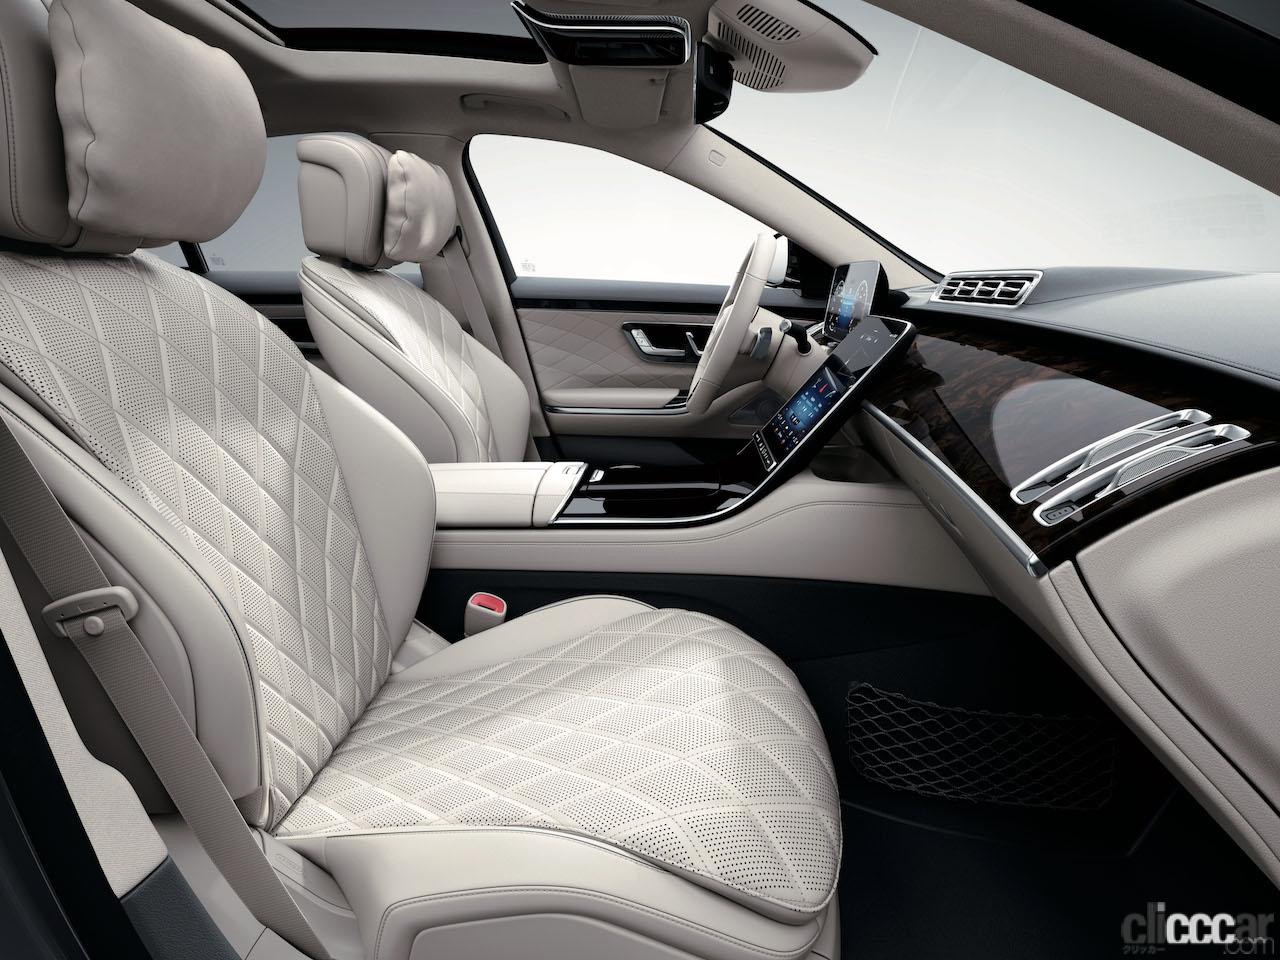 Mercedes Benz 9 画像 インパネに縦型タブレットのようなディスプレイを配置し 快適なシートを備えた新型メルセデス ベンツ Sクラス Clicccar Com